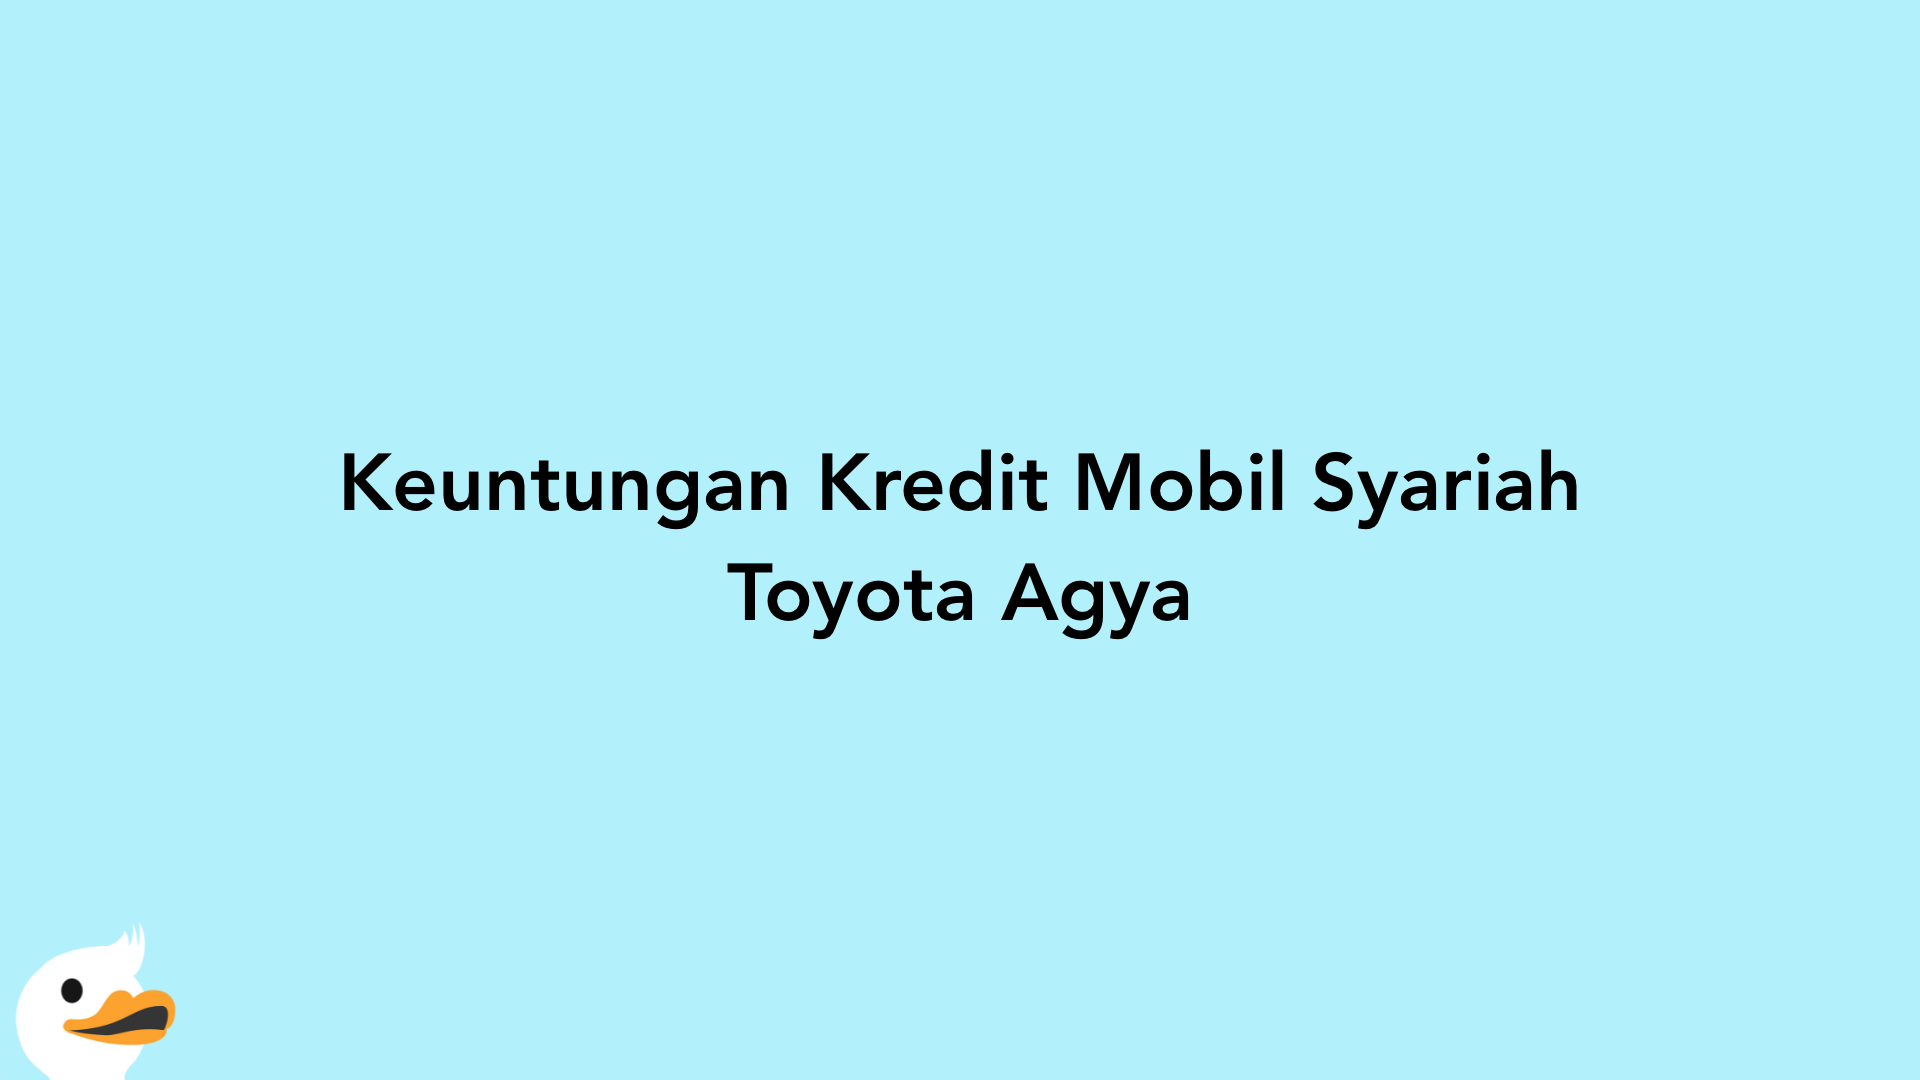 Keuntungan Kredit Mobil Syariah Toyota Agya